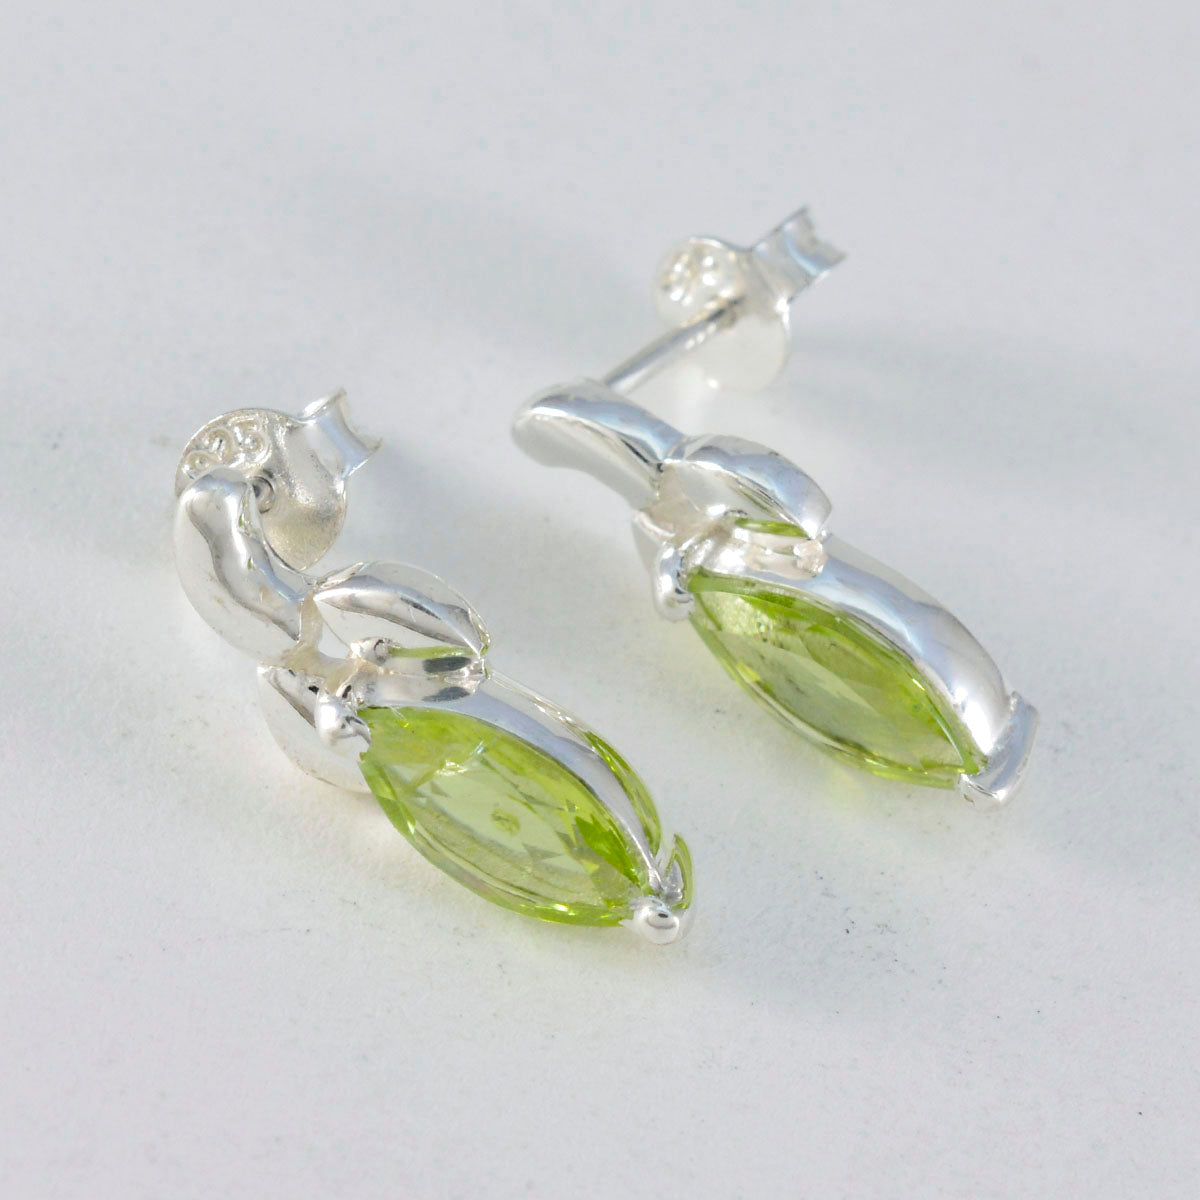 Riyo Good-Looking Sterling Silver Earring For Damsel Peridot Earring Bezel Setting Green Earring Stud Earring